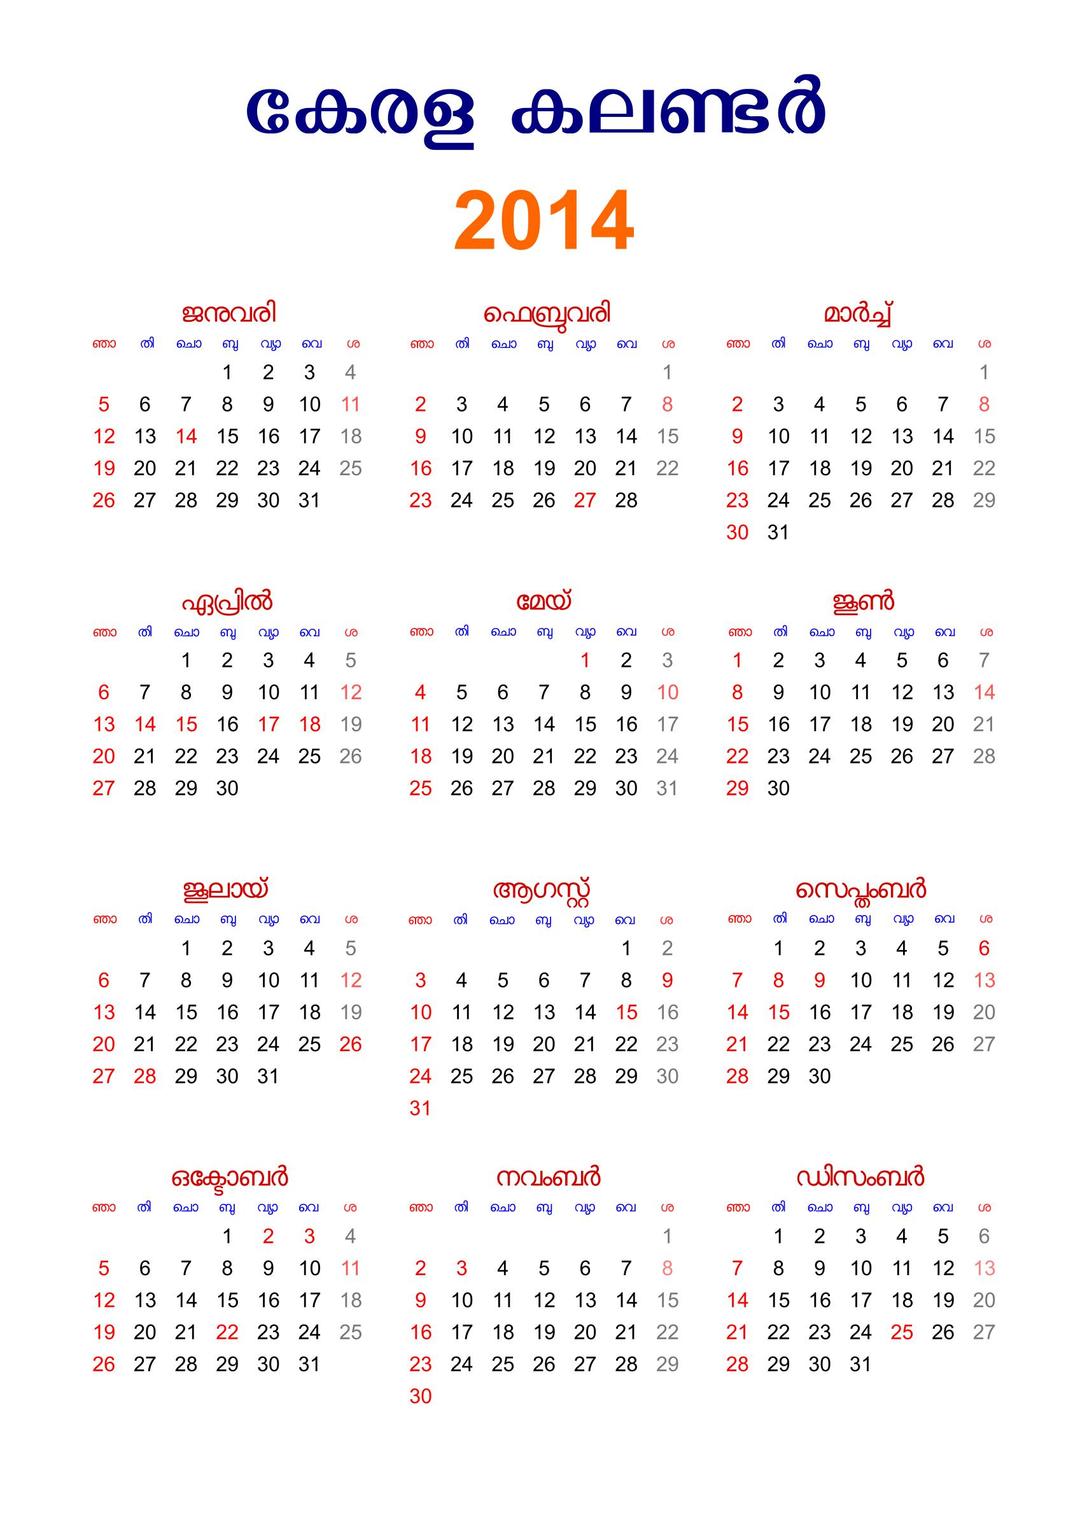 Kerala Malayalam Calendar 2014 with Holidays png transparent